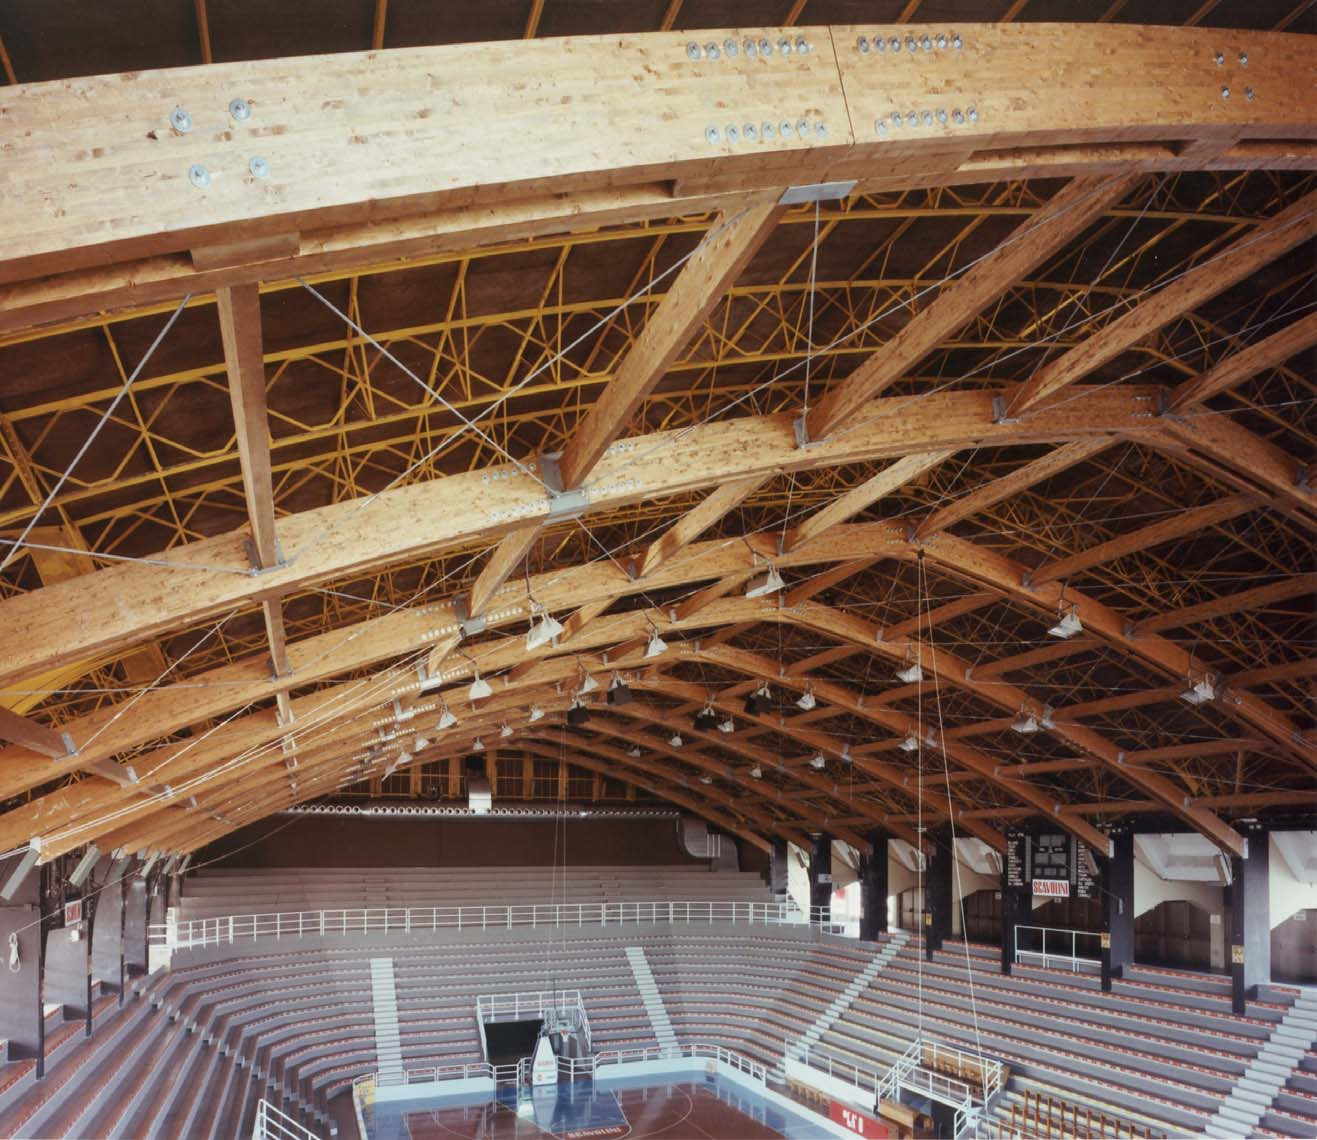 Le arcate in legno di 36 metri hanno una duplice funzione: consolidamento strutturale degli archi reticolari